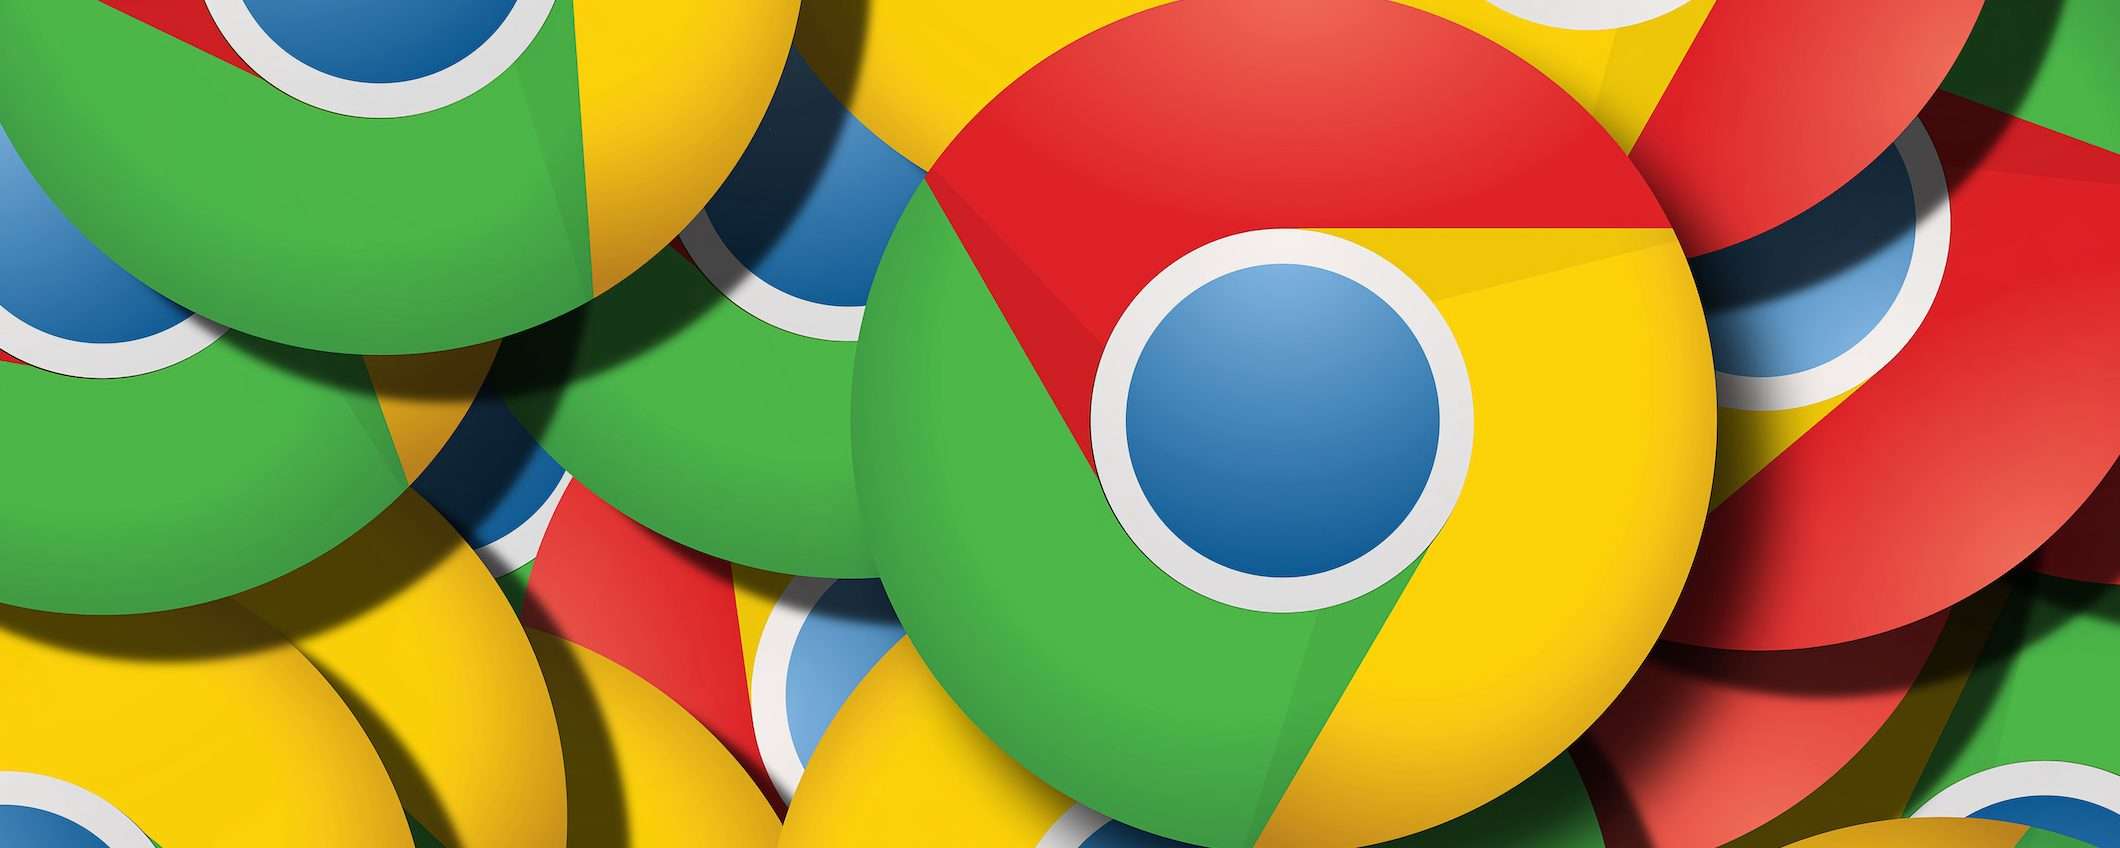 Chrome 102: Google ha avviato la distribuzione